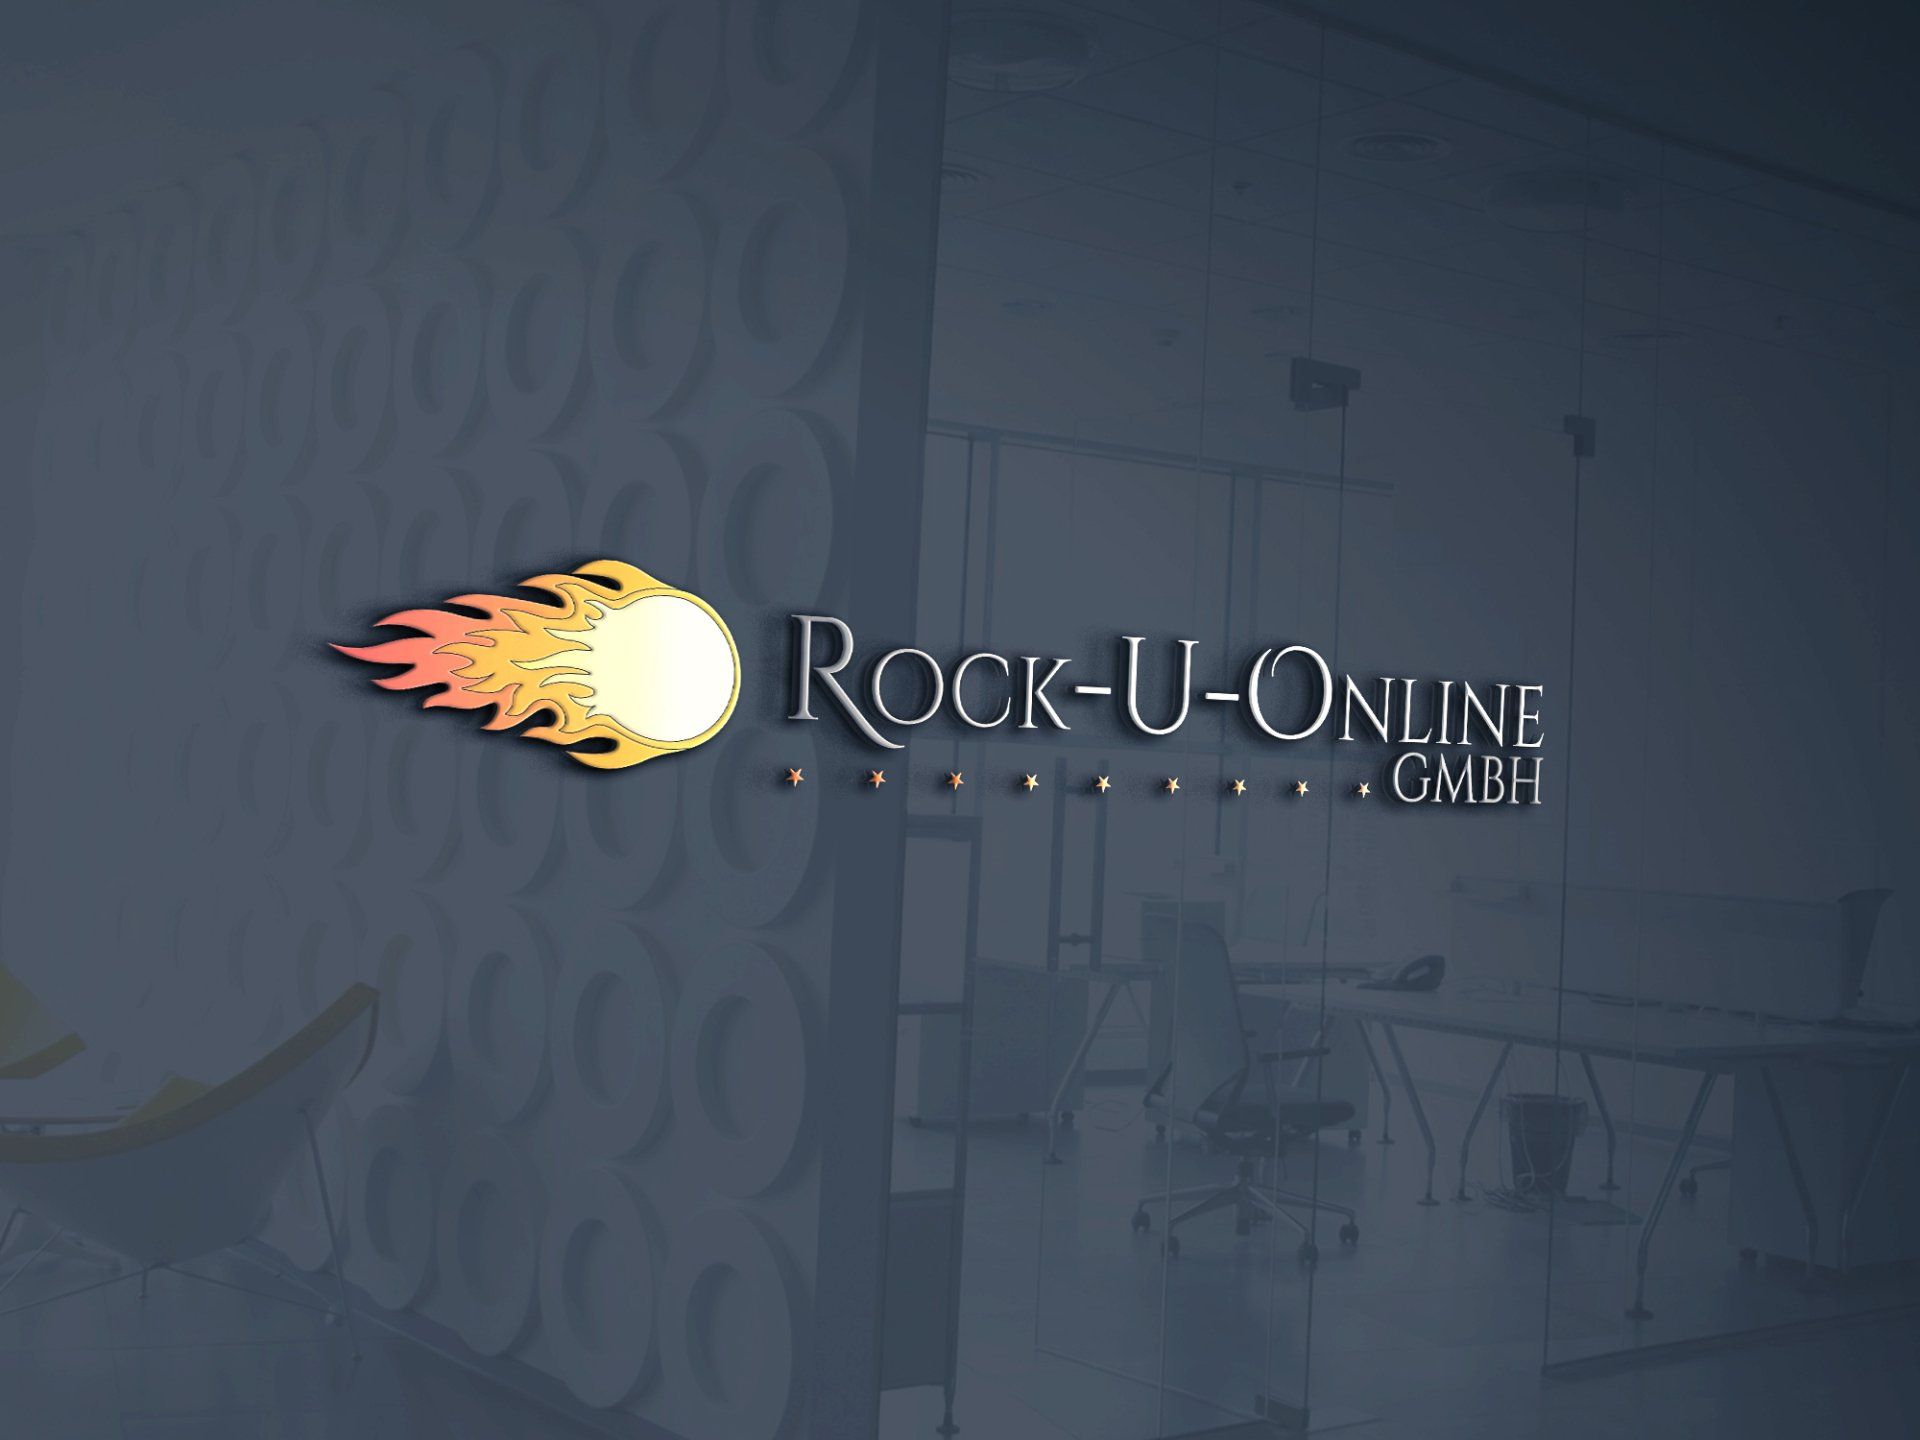 Logo der Rock-u-online GmbH auf grauem Hintergrund